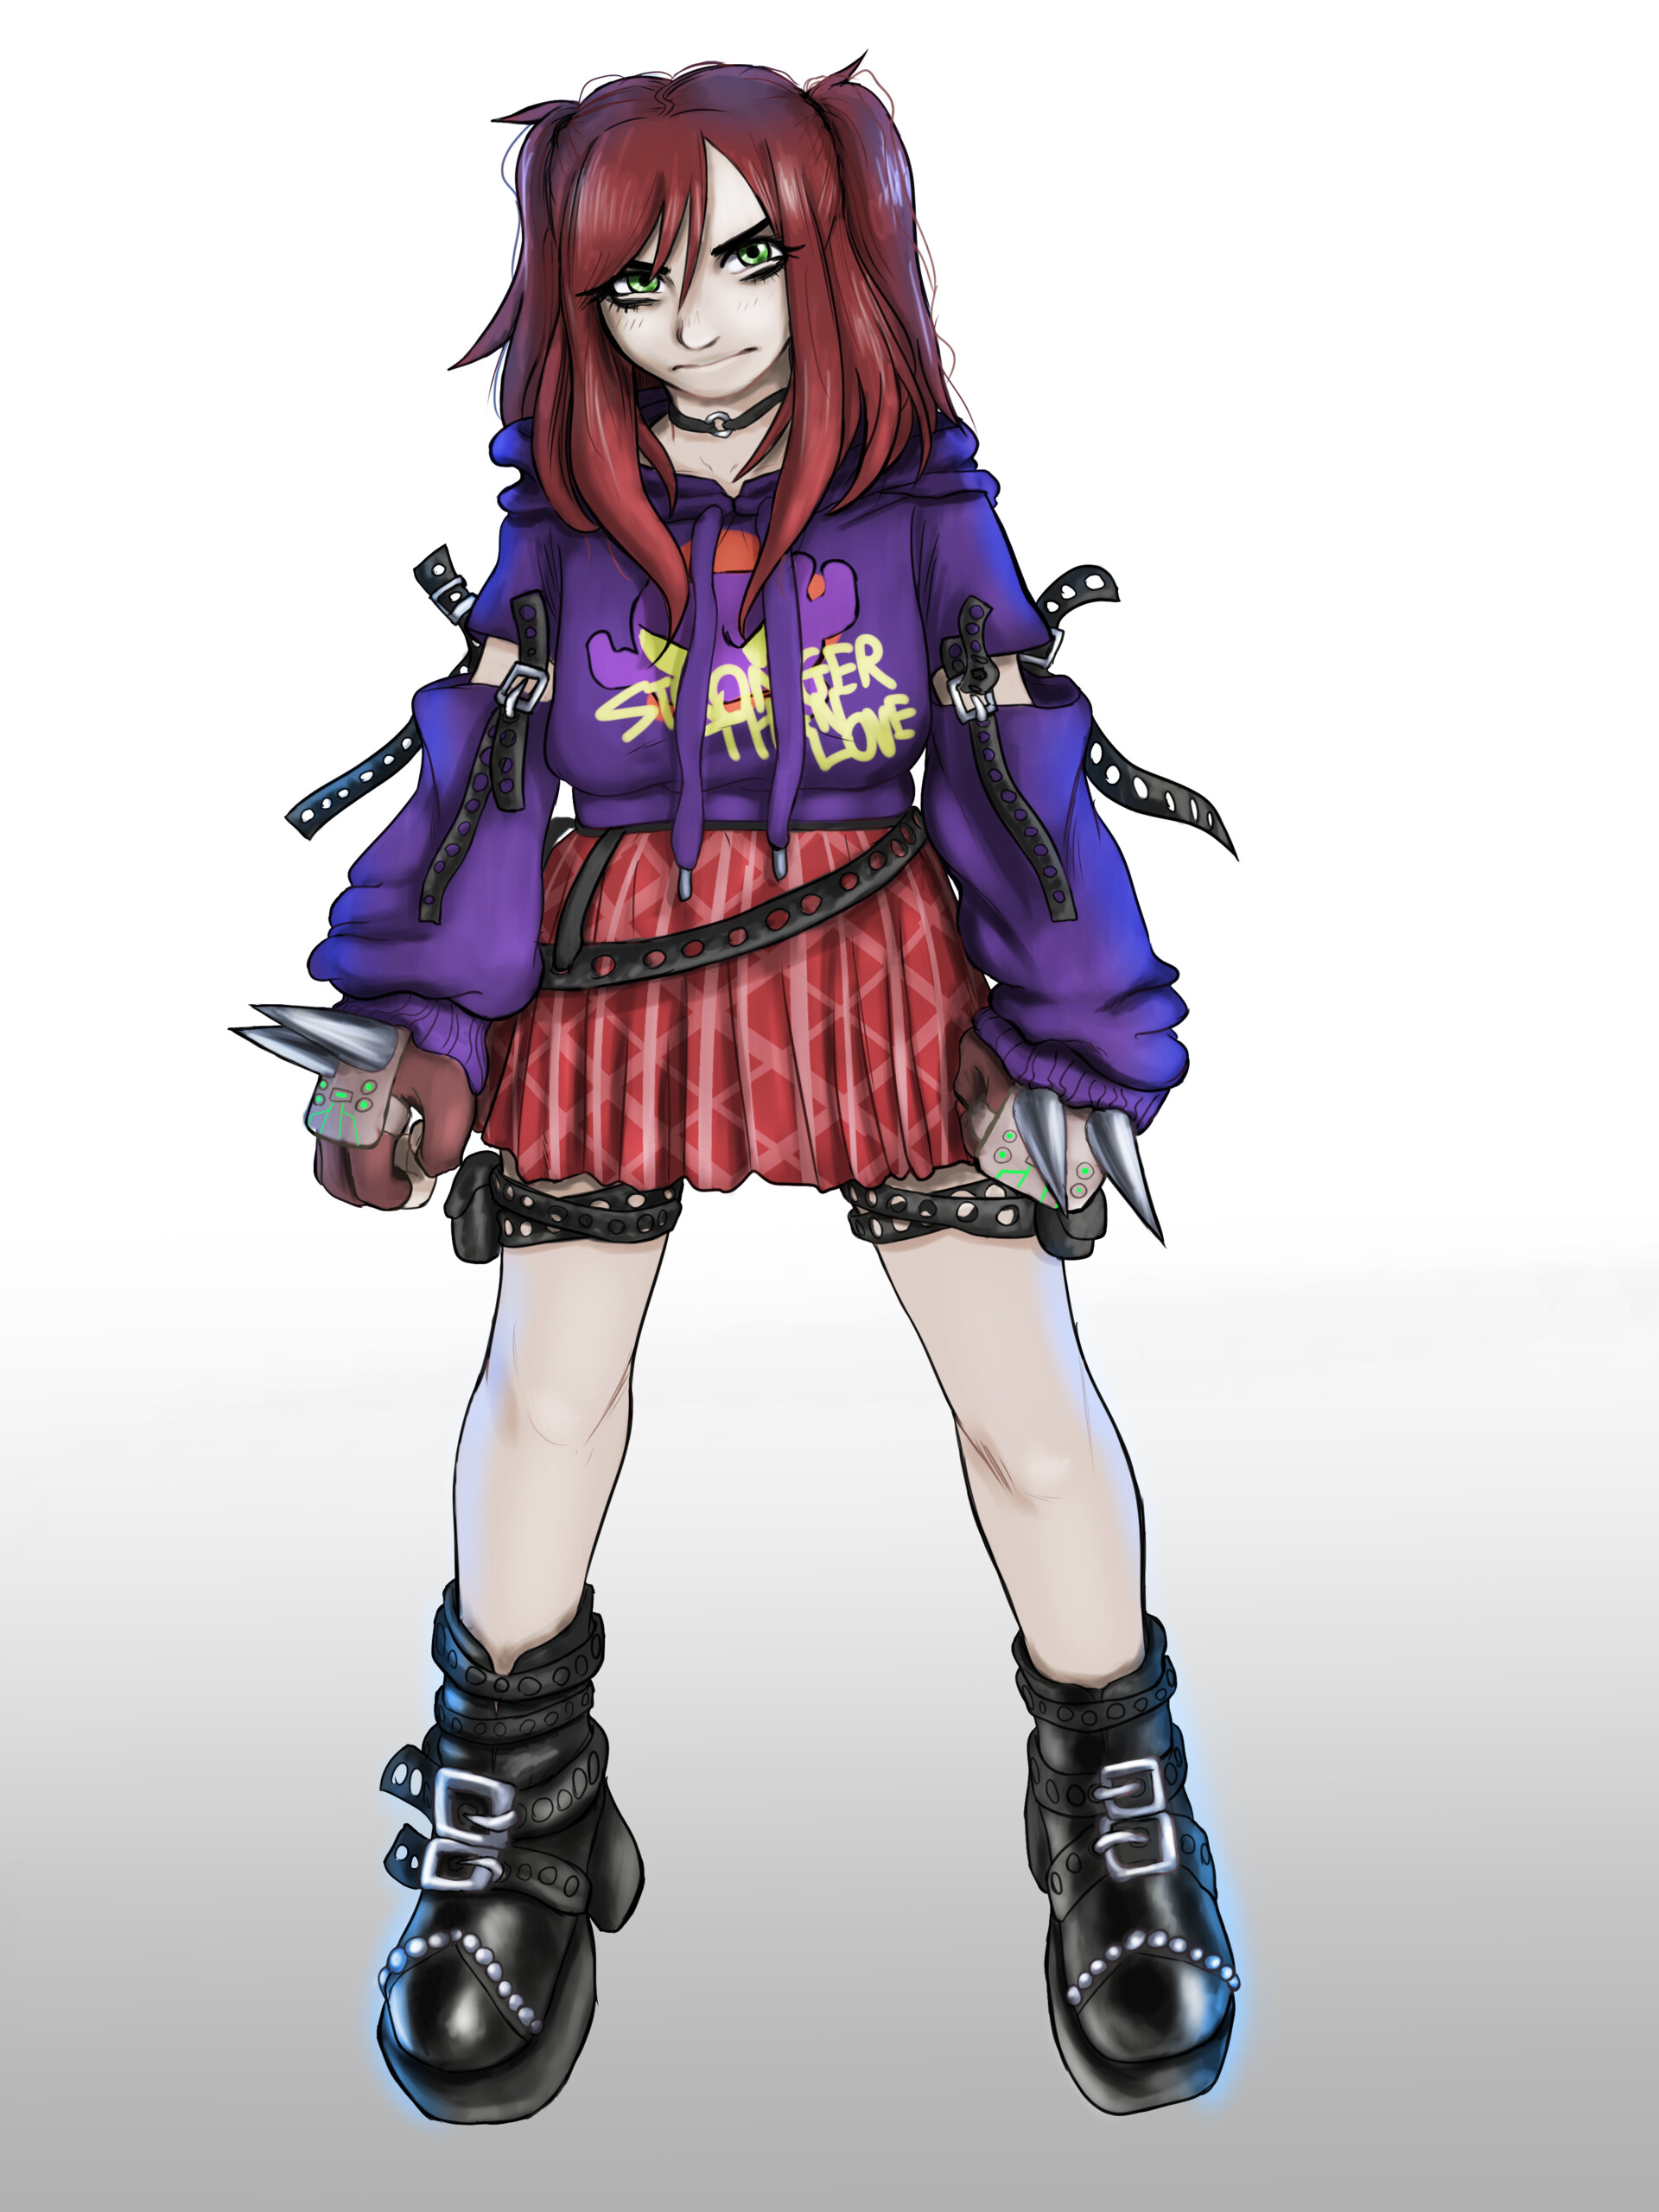 ArtStation - Design Characters Anime Girl